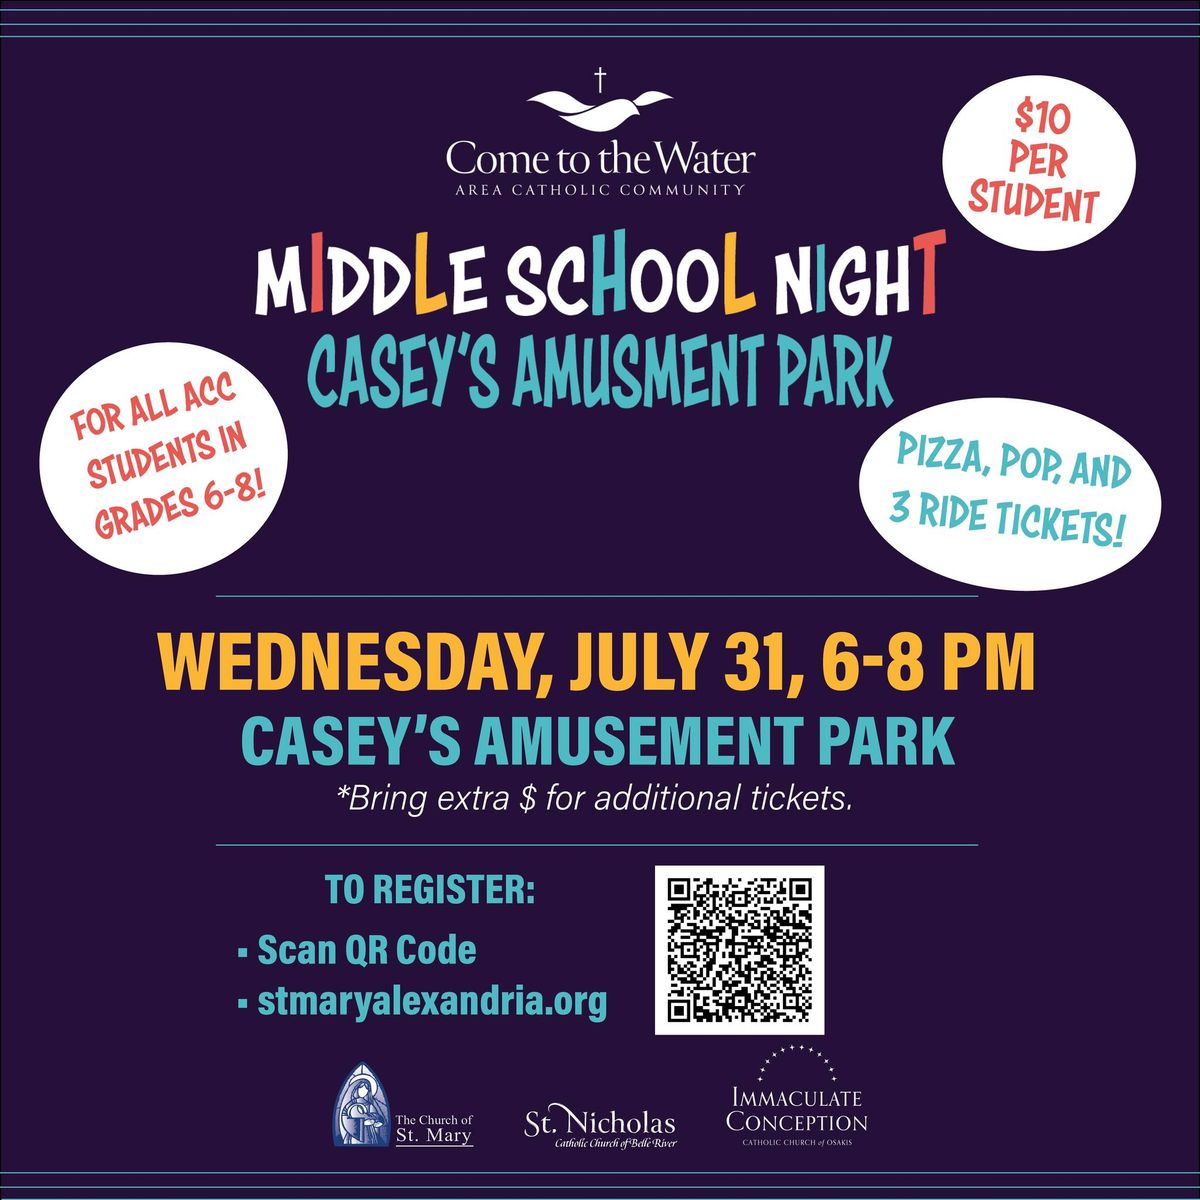 Middle School Casey's Amusement Park